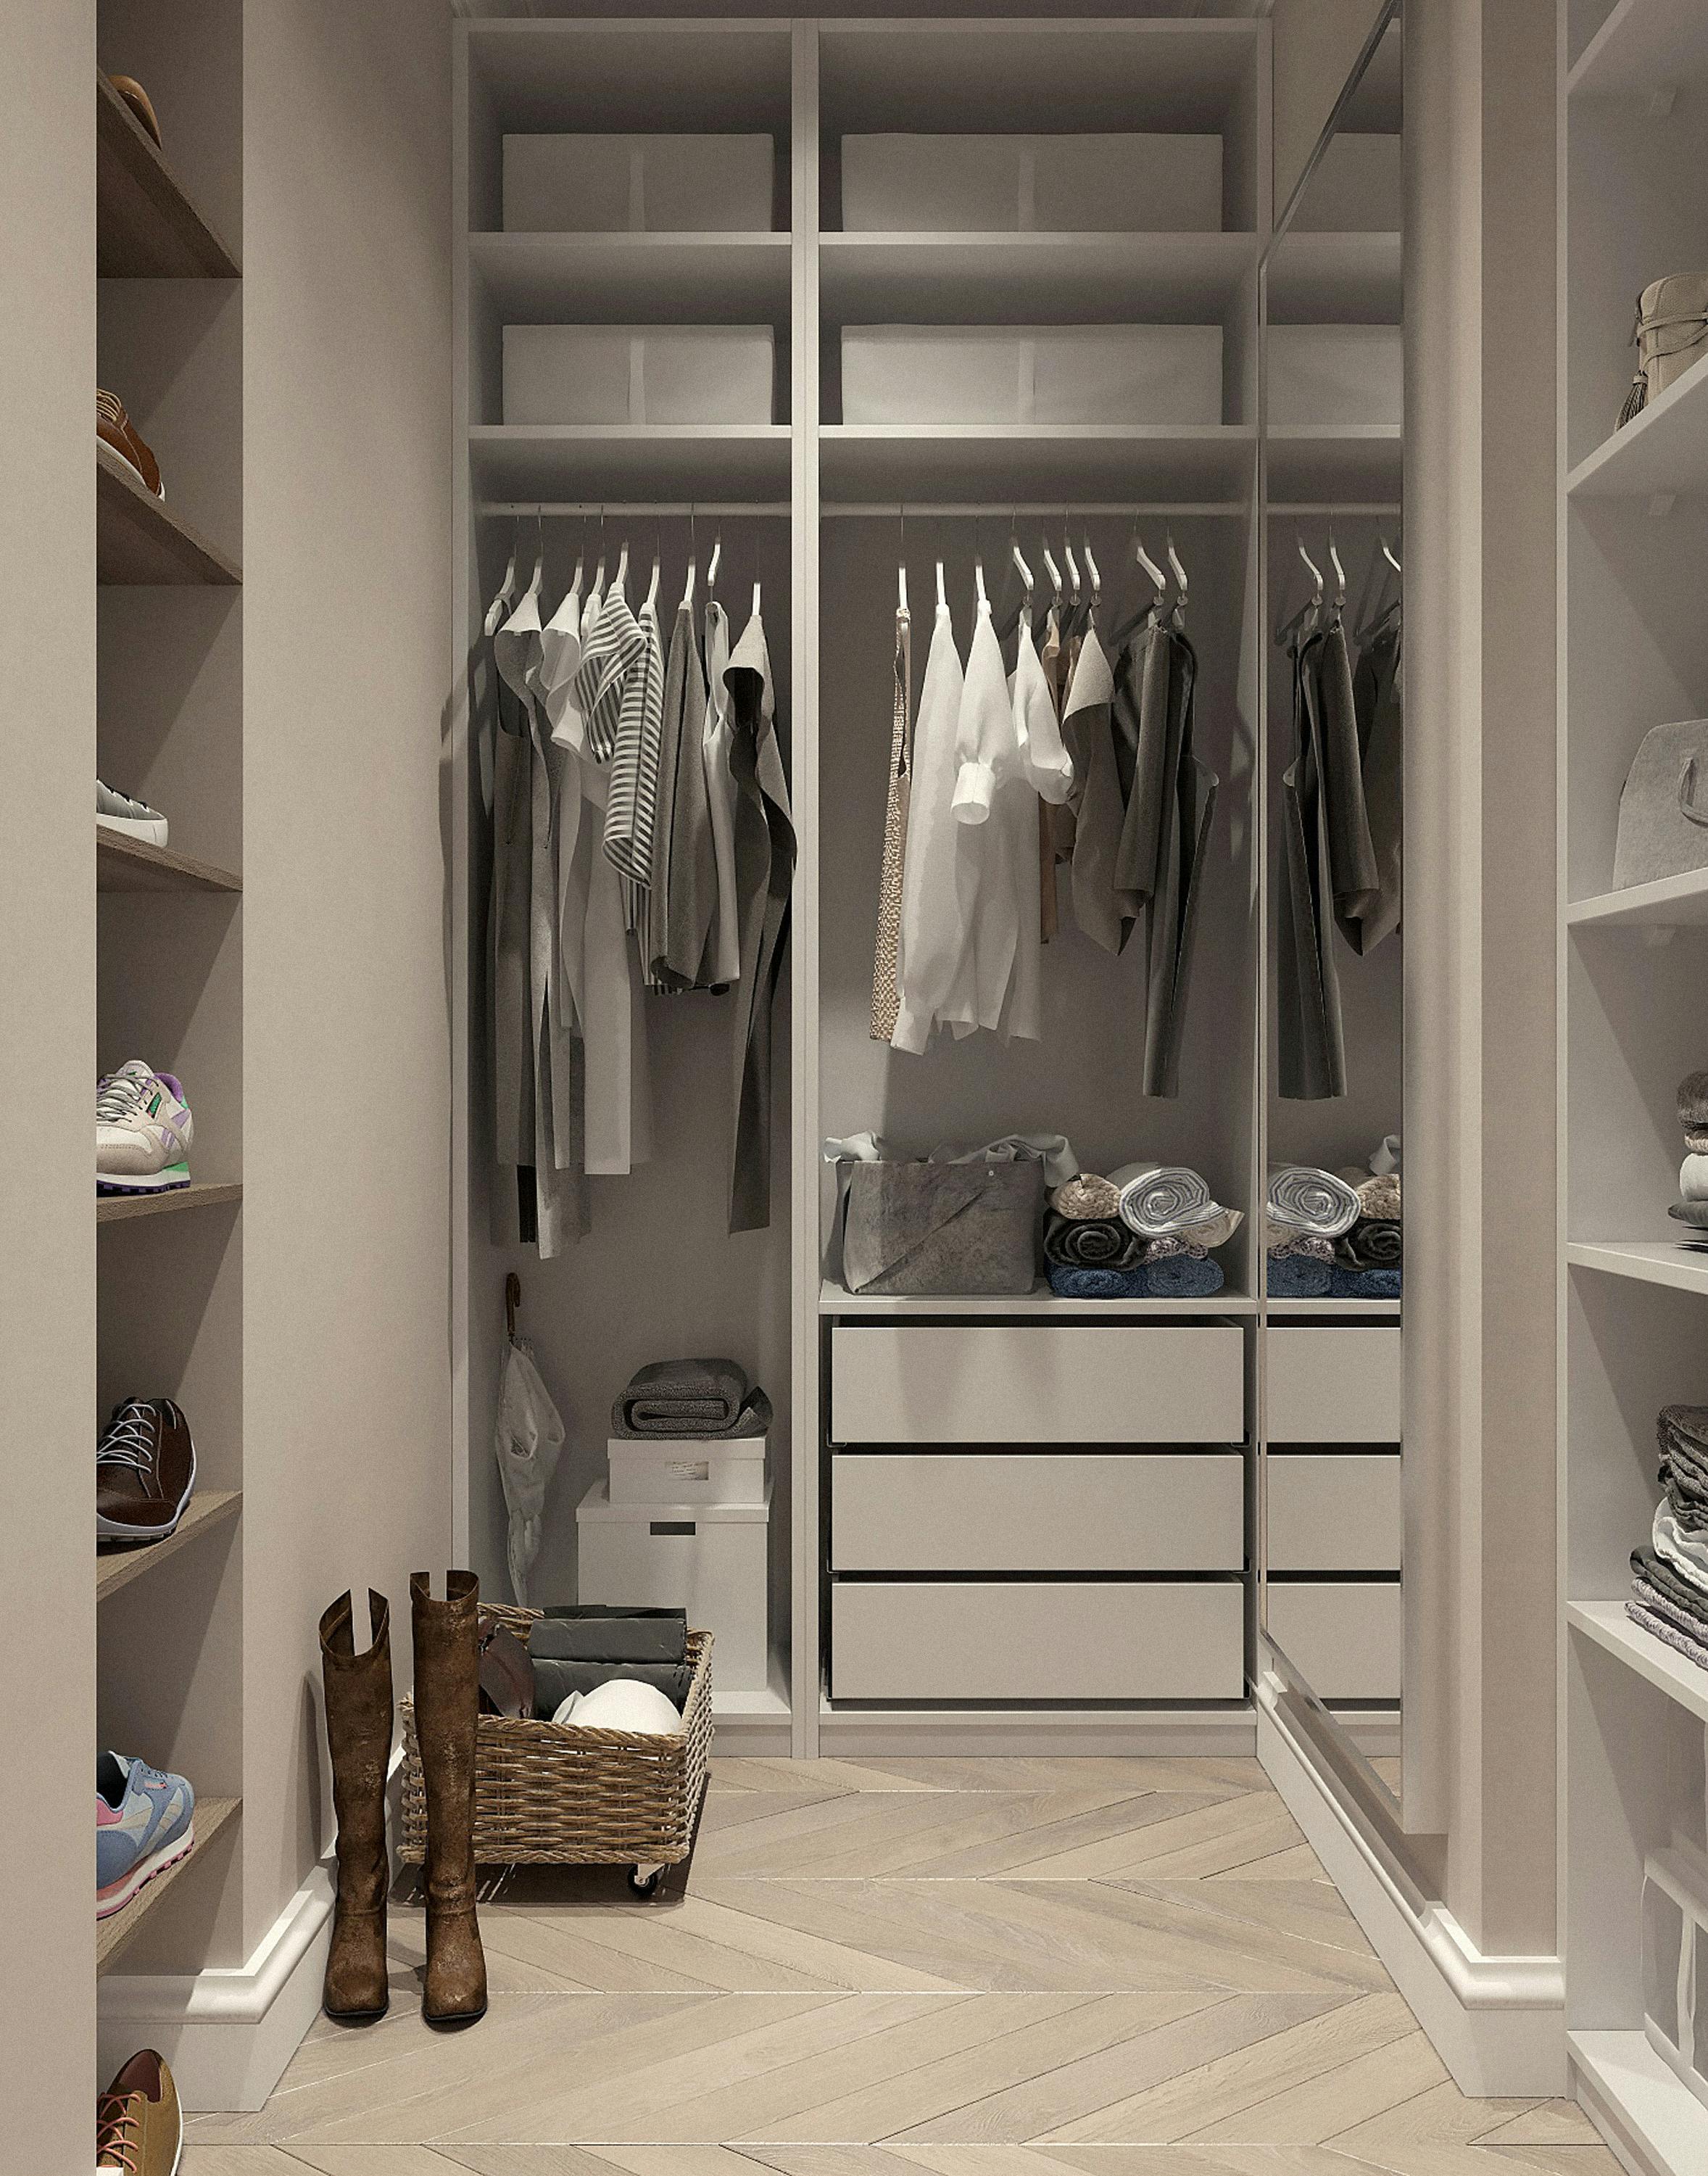 A beige closet | Source: Pexels